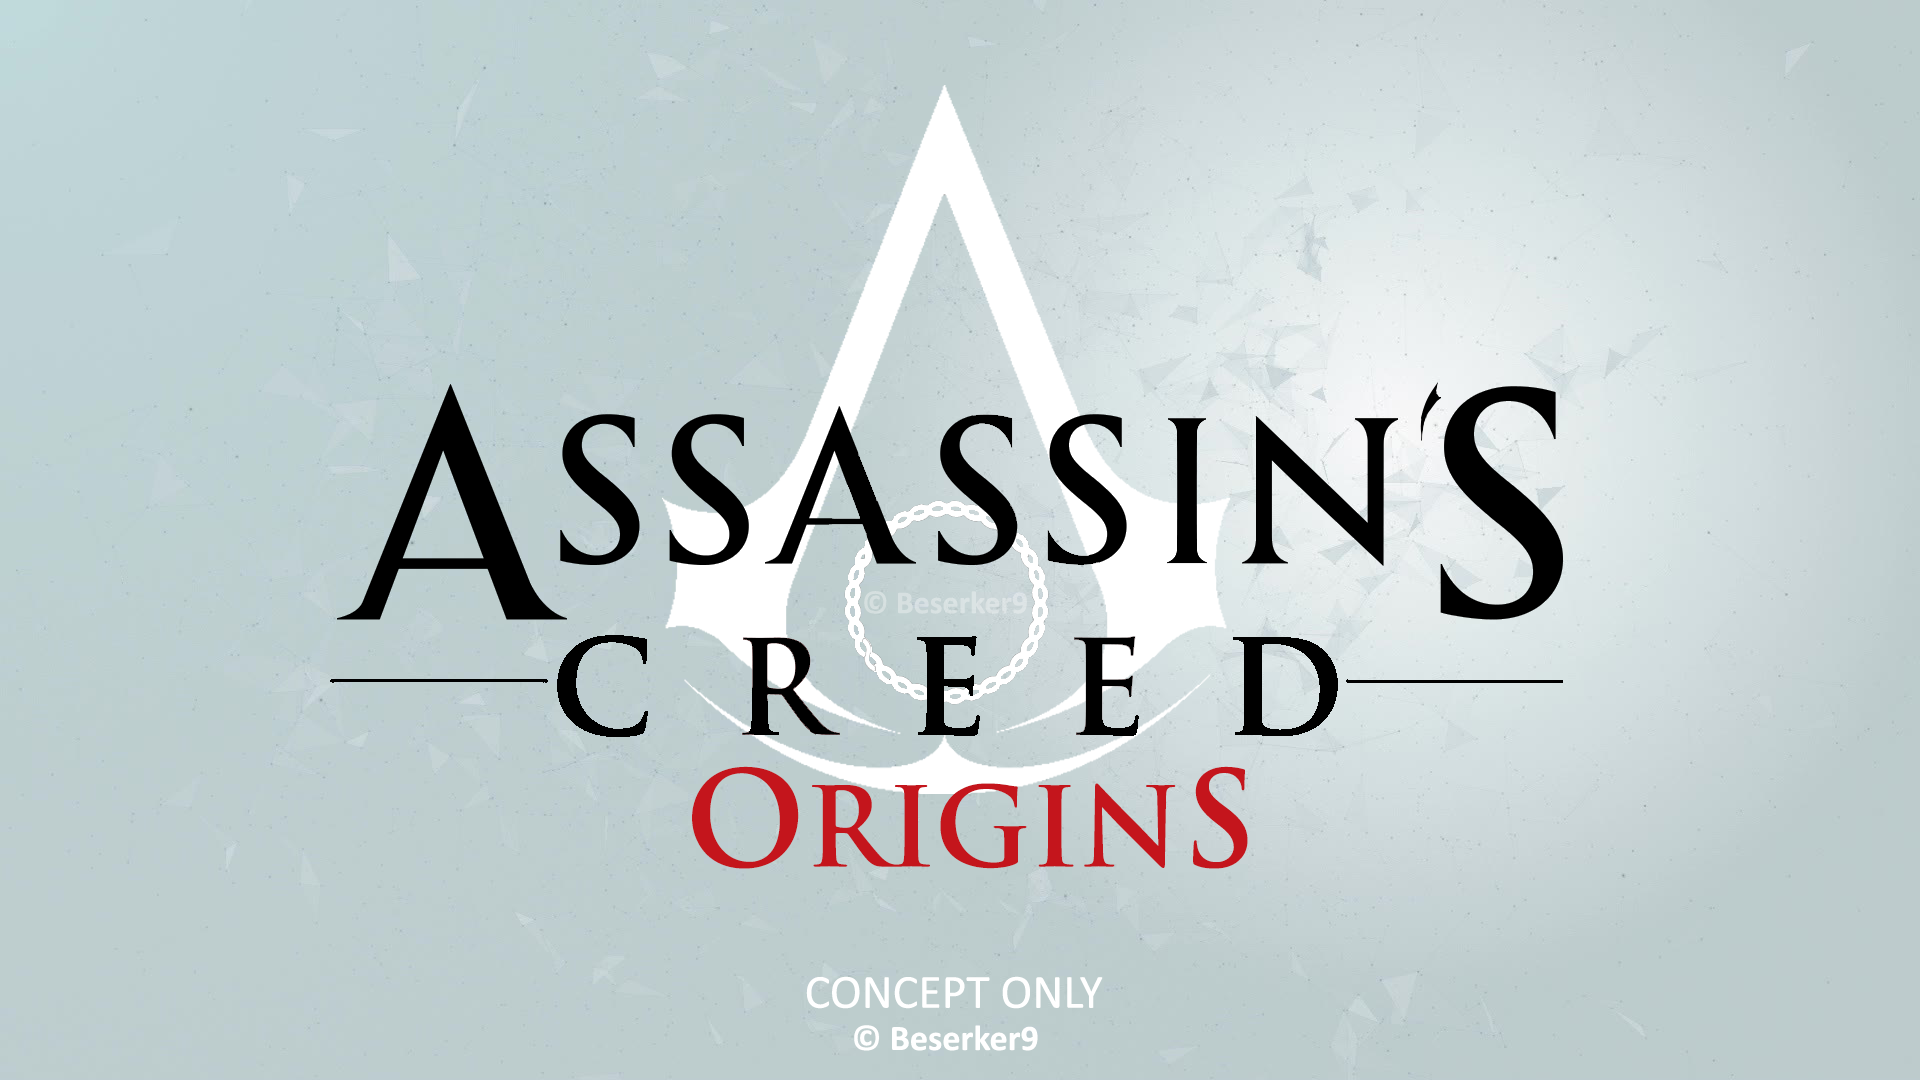 اطلاعات جدیدی از بازی Assassin’s Creed Origins منتشر شد